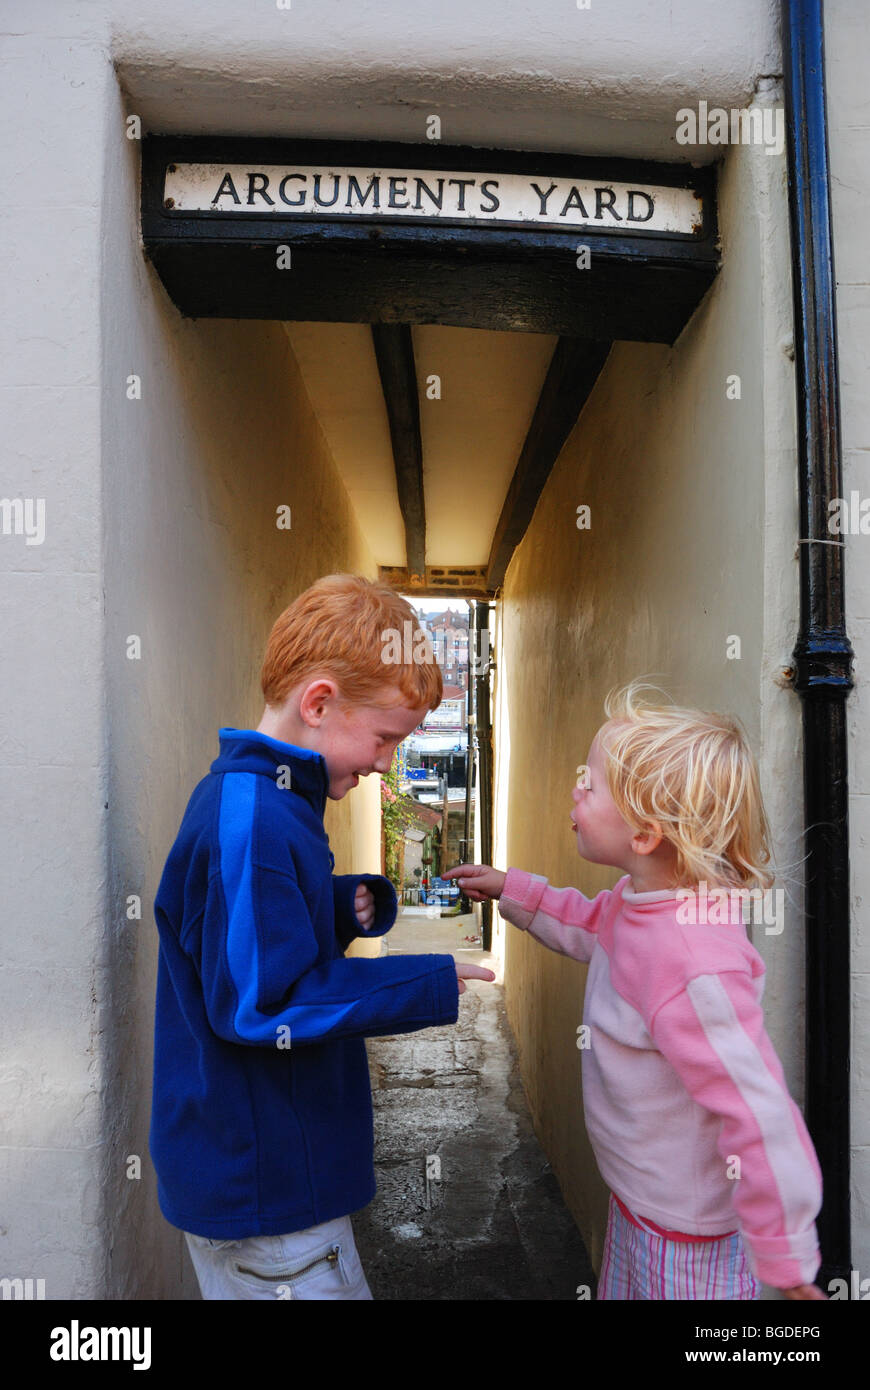 Les enfants ayant un argument en Cour d'arguments, une rue à Whitby, en Angleterre Banque D'Images